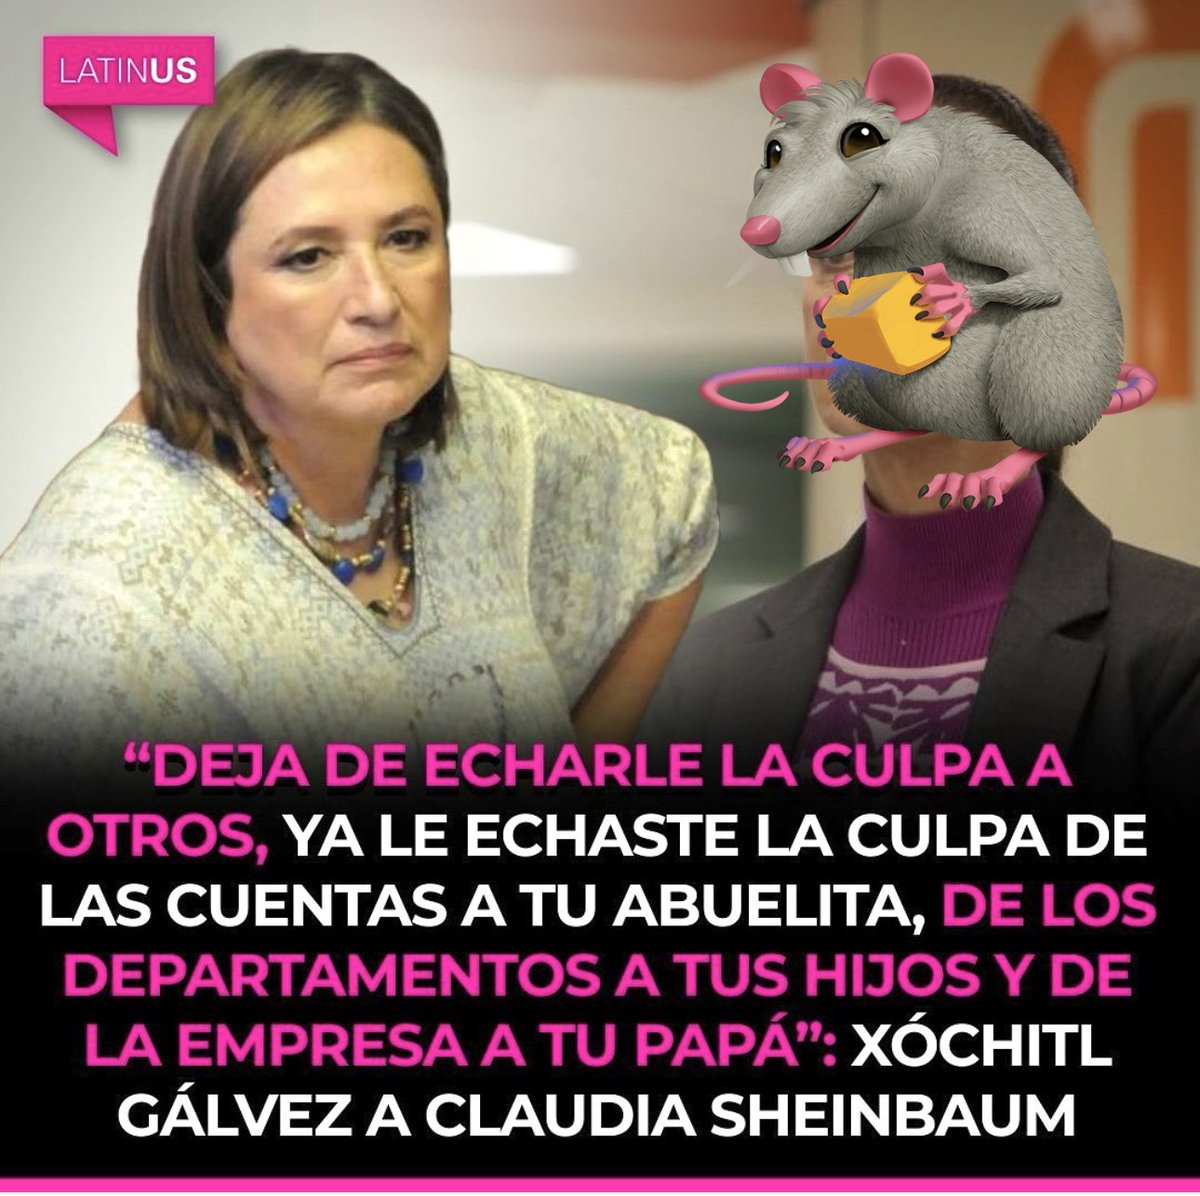 Por eso ella será nuestra Presidenta 🩷 

Directa sin medias tintas, para indolentes la 🦎

¡Vamos a ganar @XochitlGalvez!

#HijosDeMx #MxConXochitl